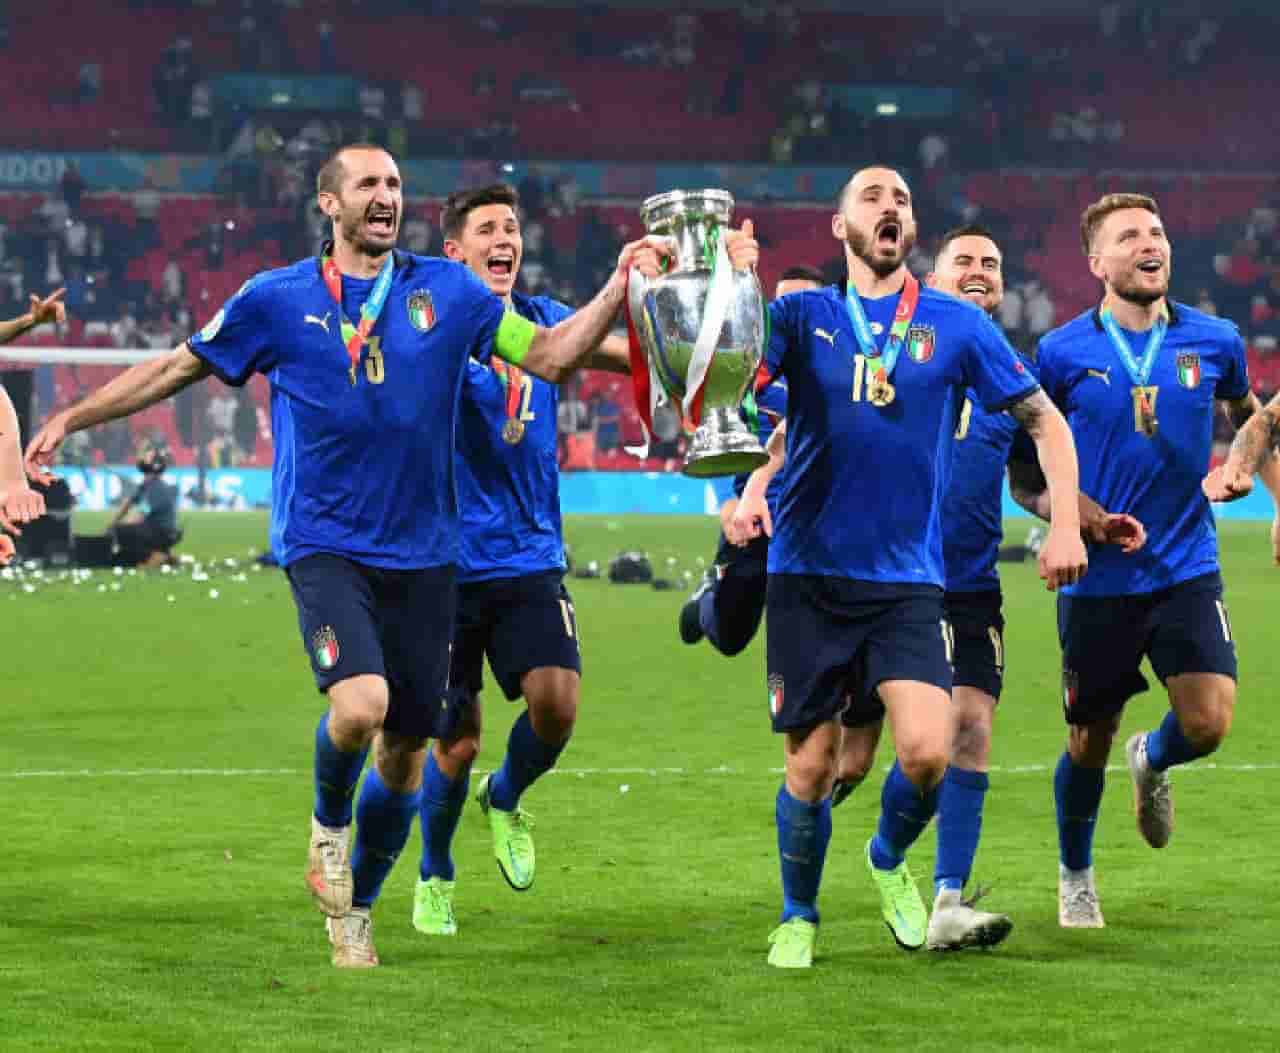 Fiat festeggia l'Italia campione d'Europa: il post celebrativo su Instagram